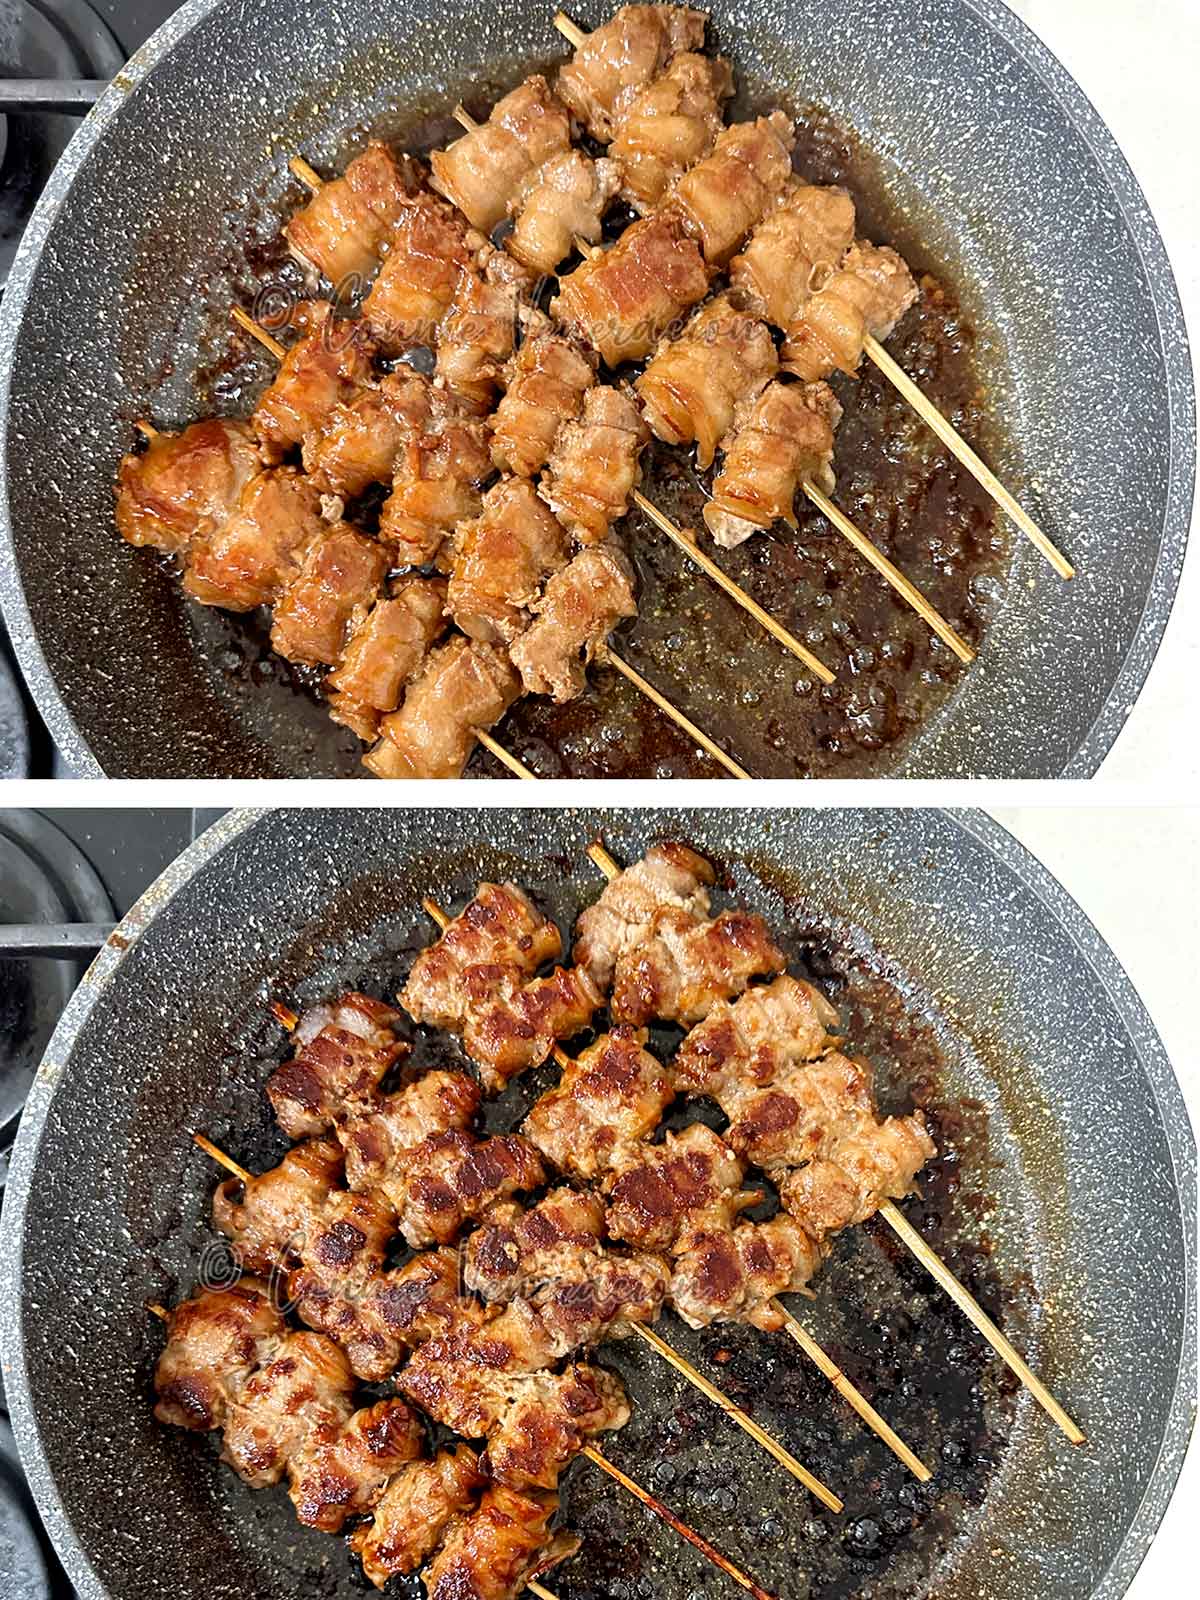 Skewered pork belly braising in teriyaki sauce